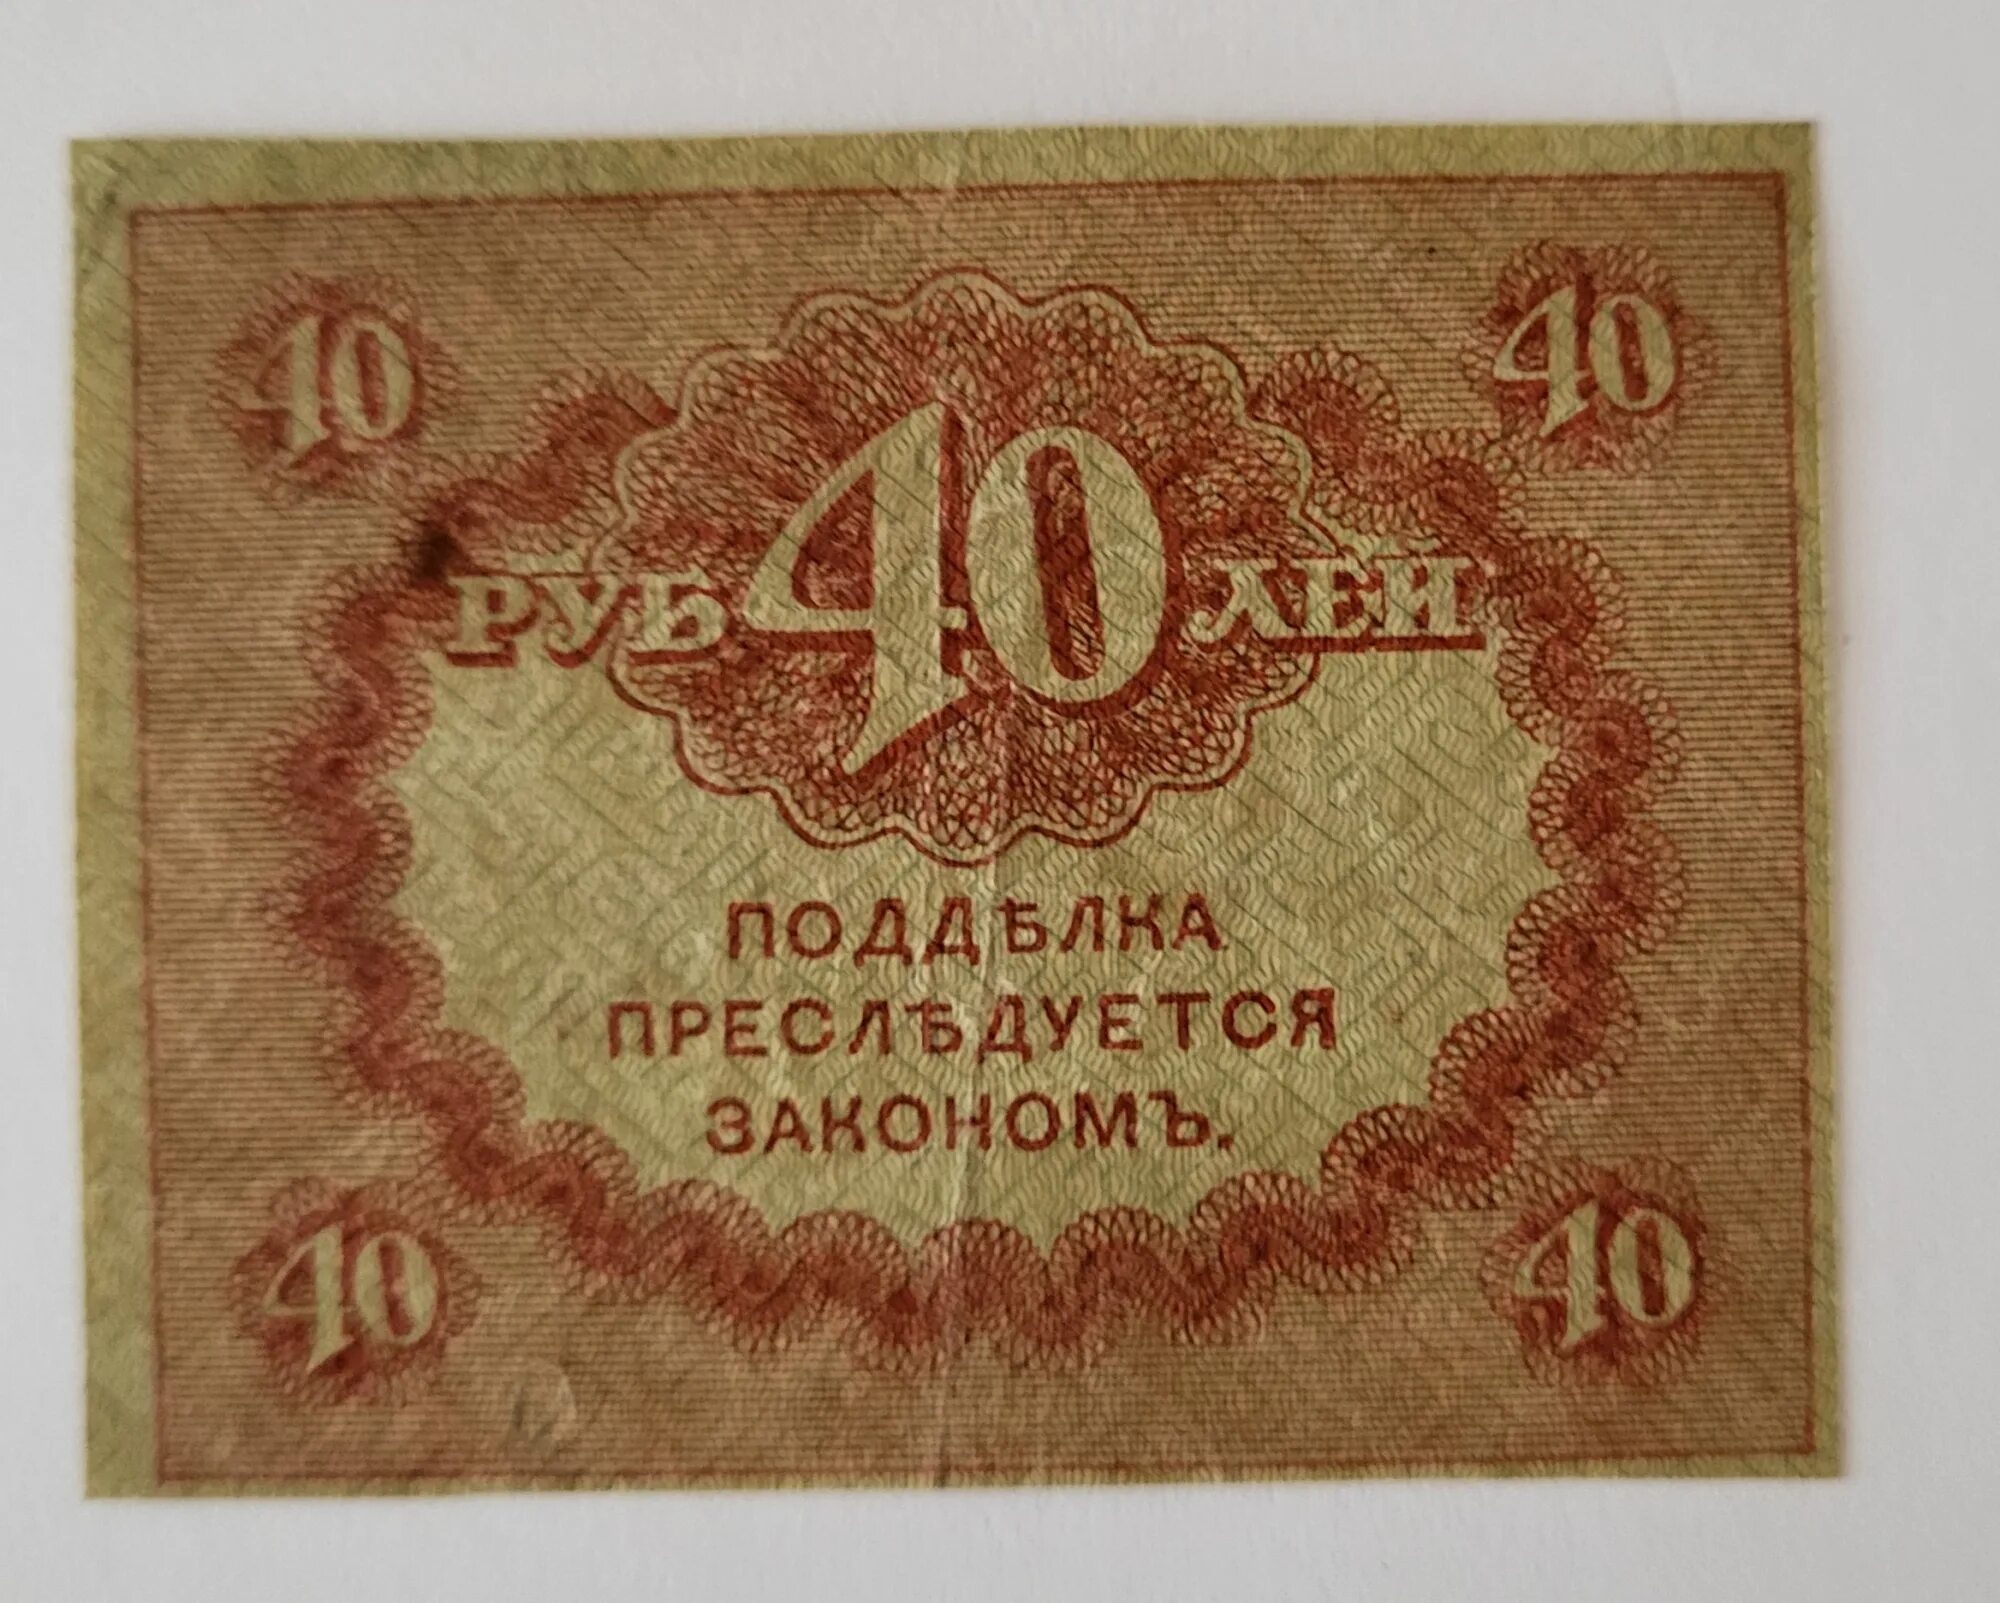 40 Рублей 1917. Керенка. 1 Рубль 1917 года. Купюра 40 рублей.